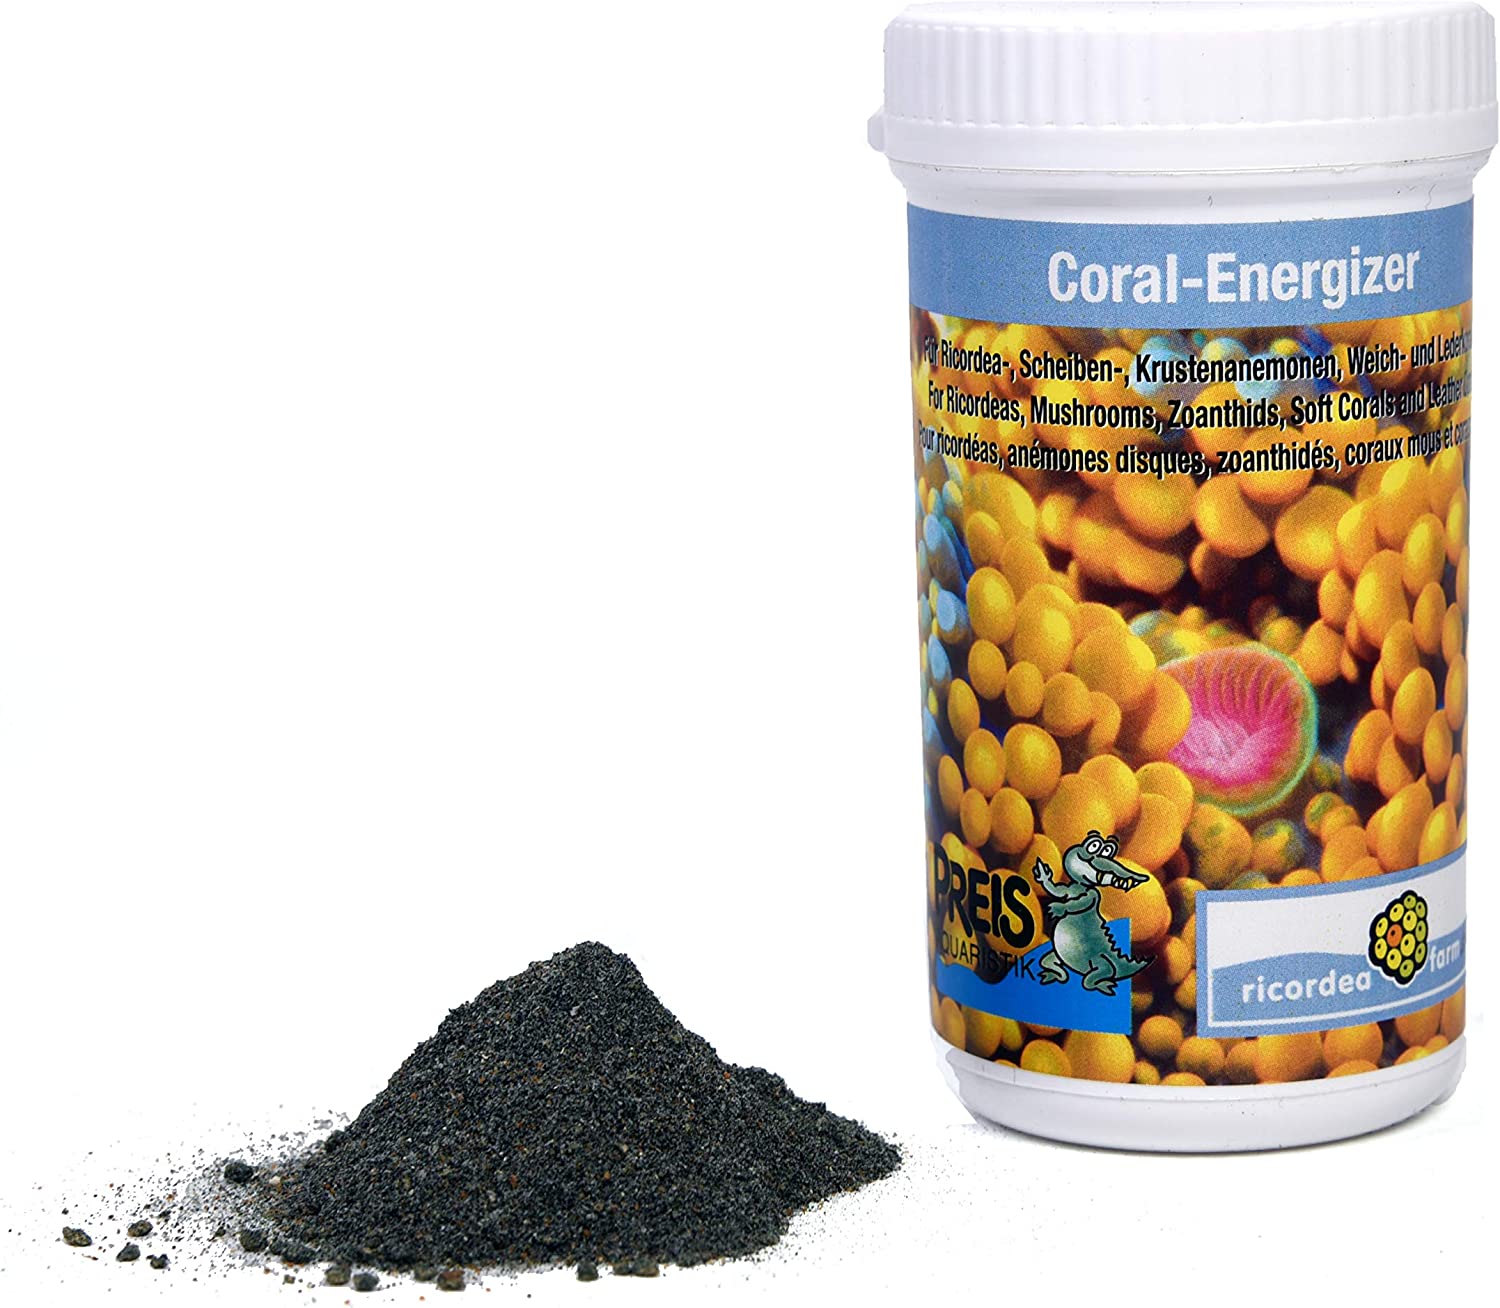 preis-coral-energizer-60-gr-nourriture-pour-anemones-et-coraux-mous-1-min